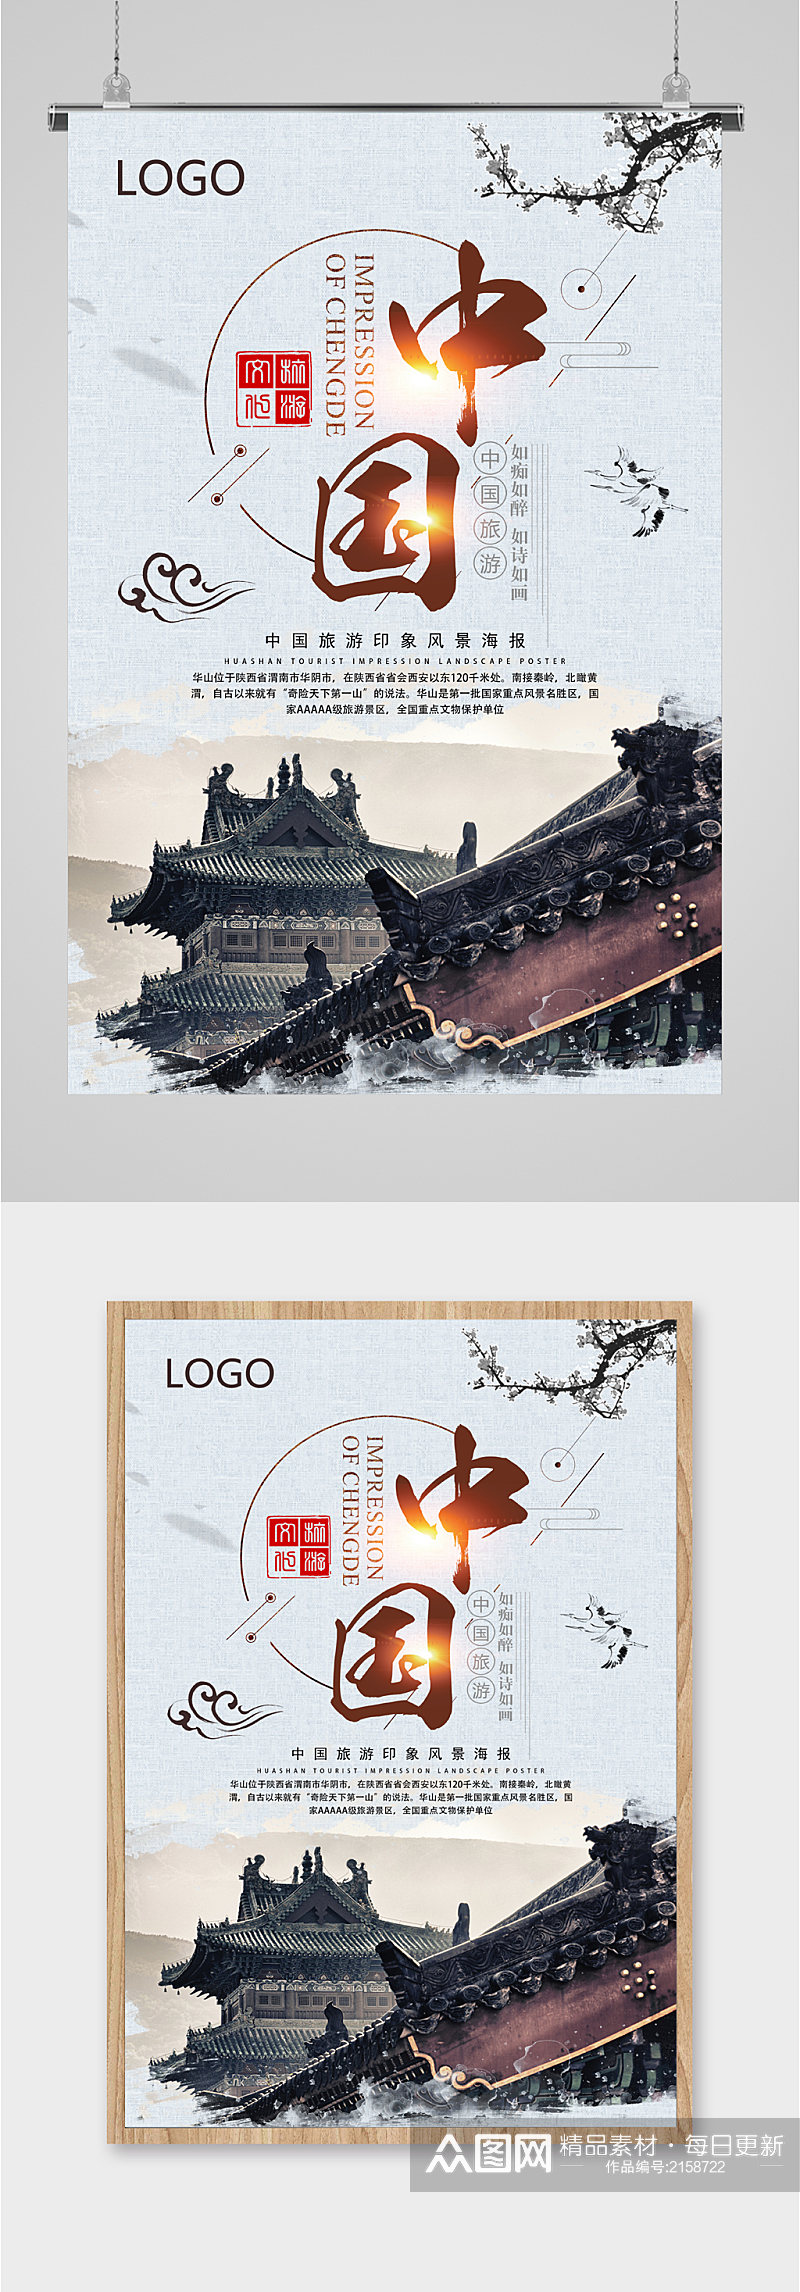 中国旅游印象海报素材